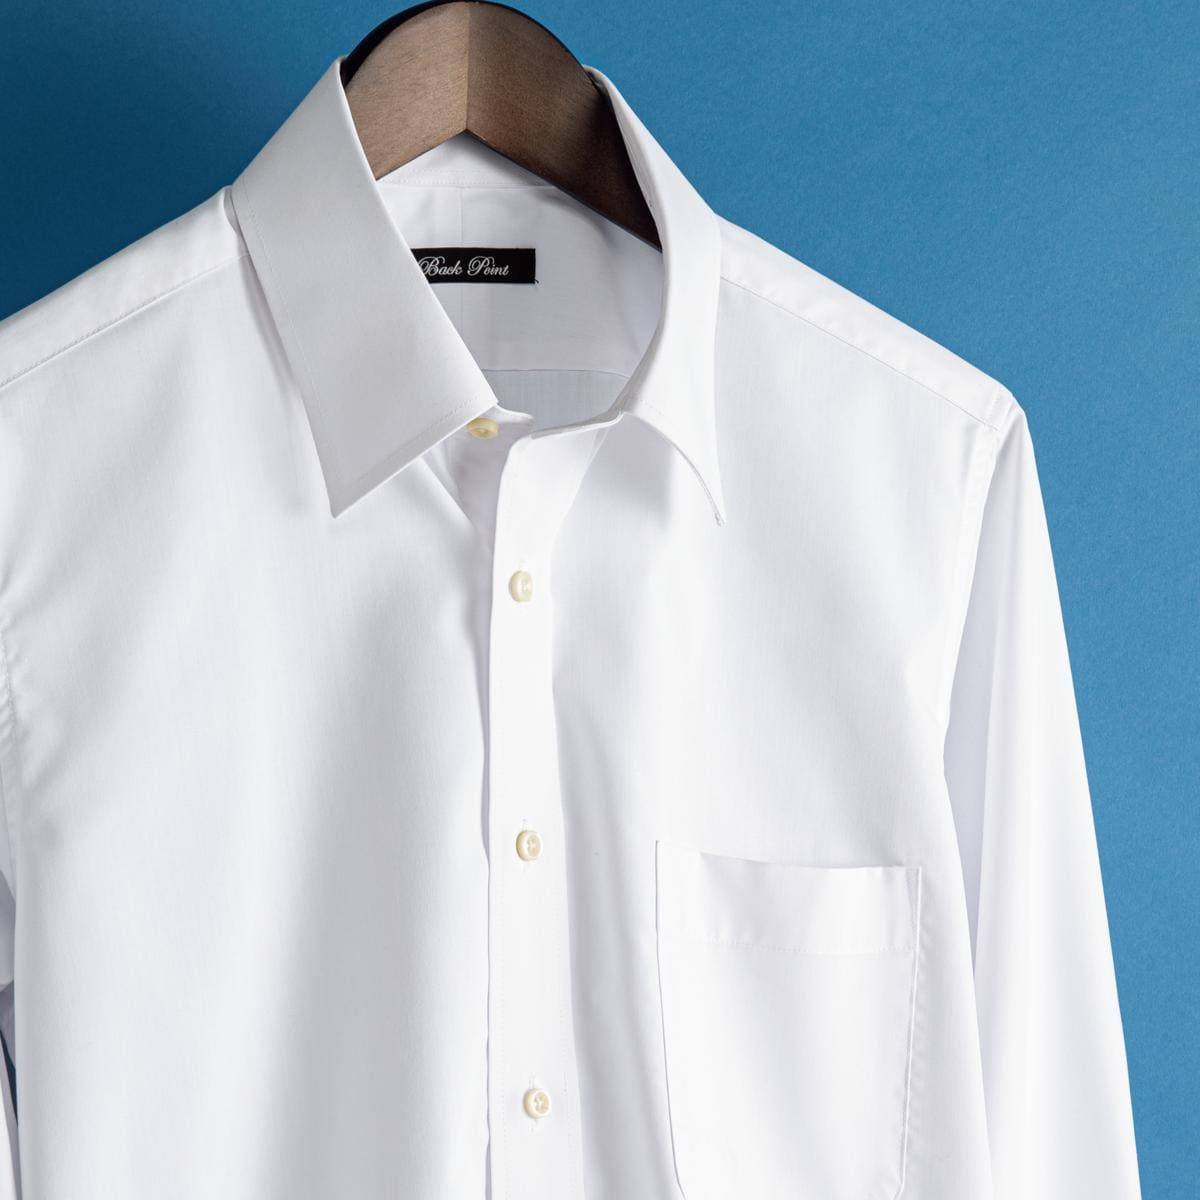 形態安定メンズビジネス白Yシャツ(長袖)/抗菌防臭・防汚加工 ファッション通販ならセシール(cecile)